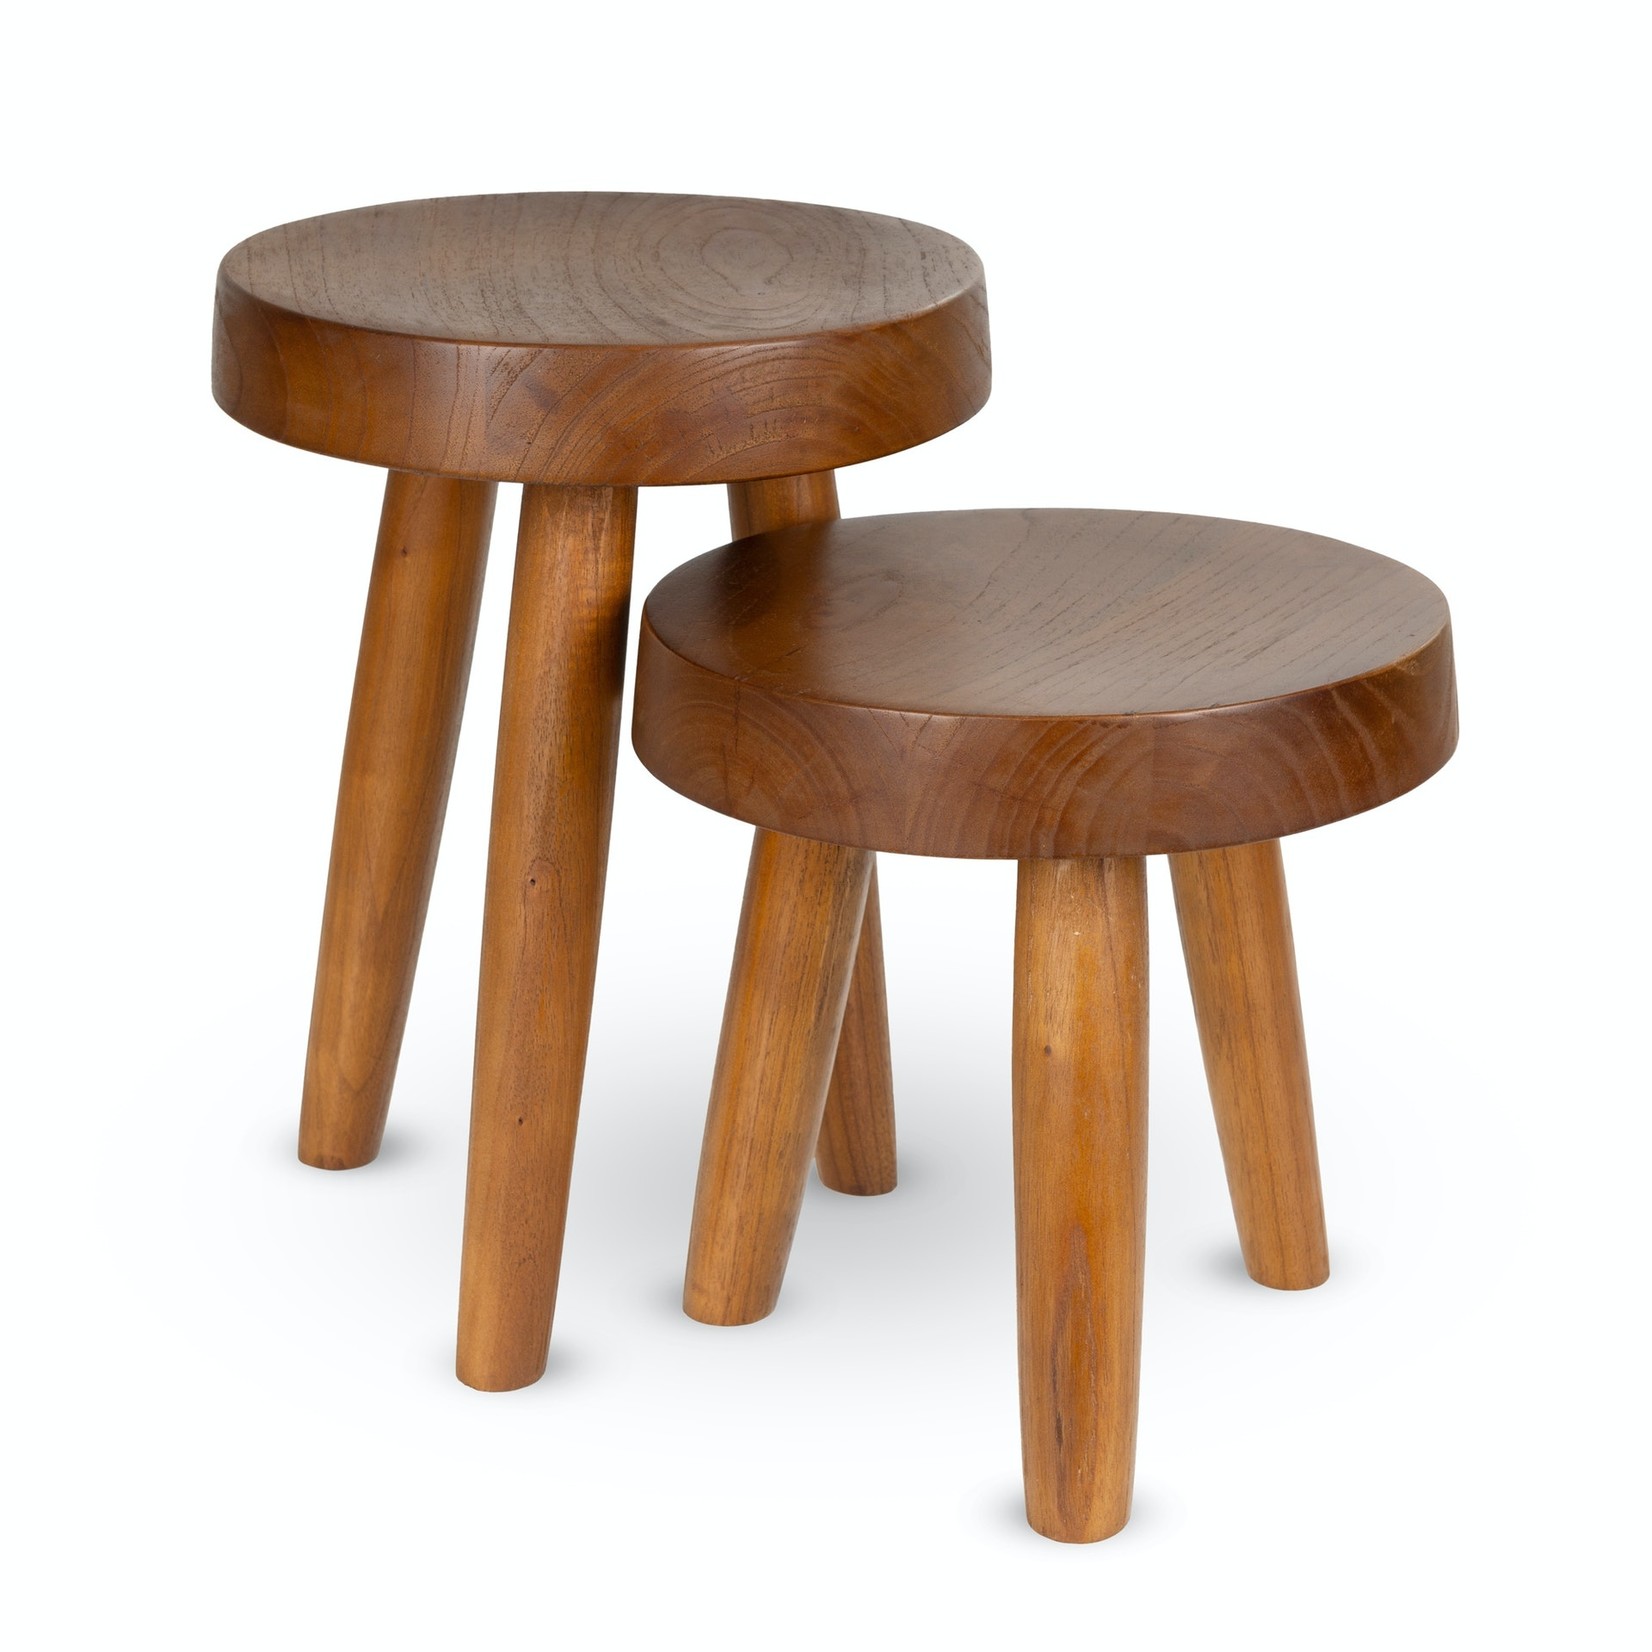 Chandigarh style wooden stool - Dark brown